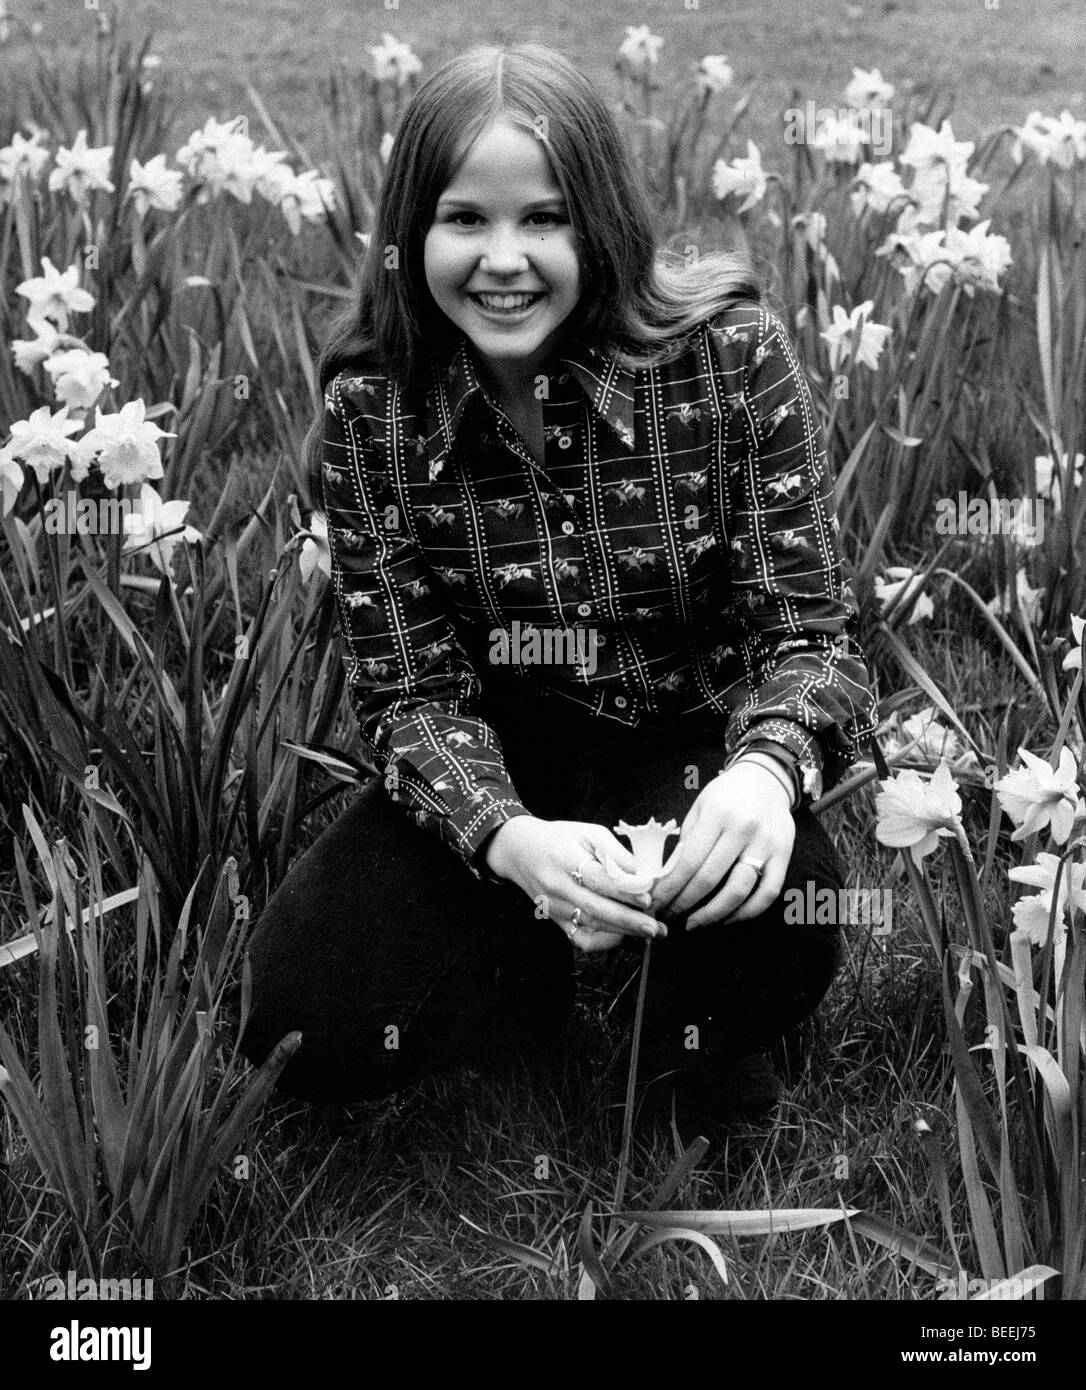 La actriz Linda Blair posando con flores. Foto de stock